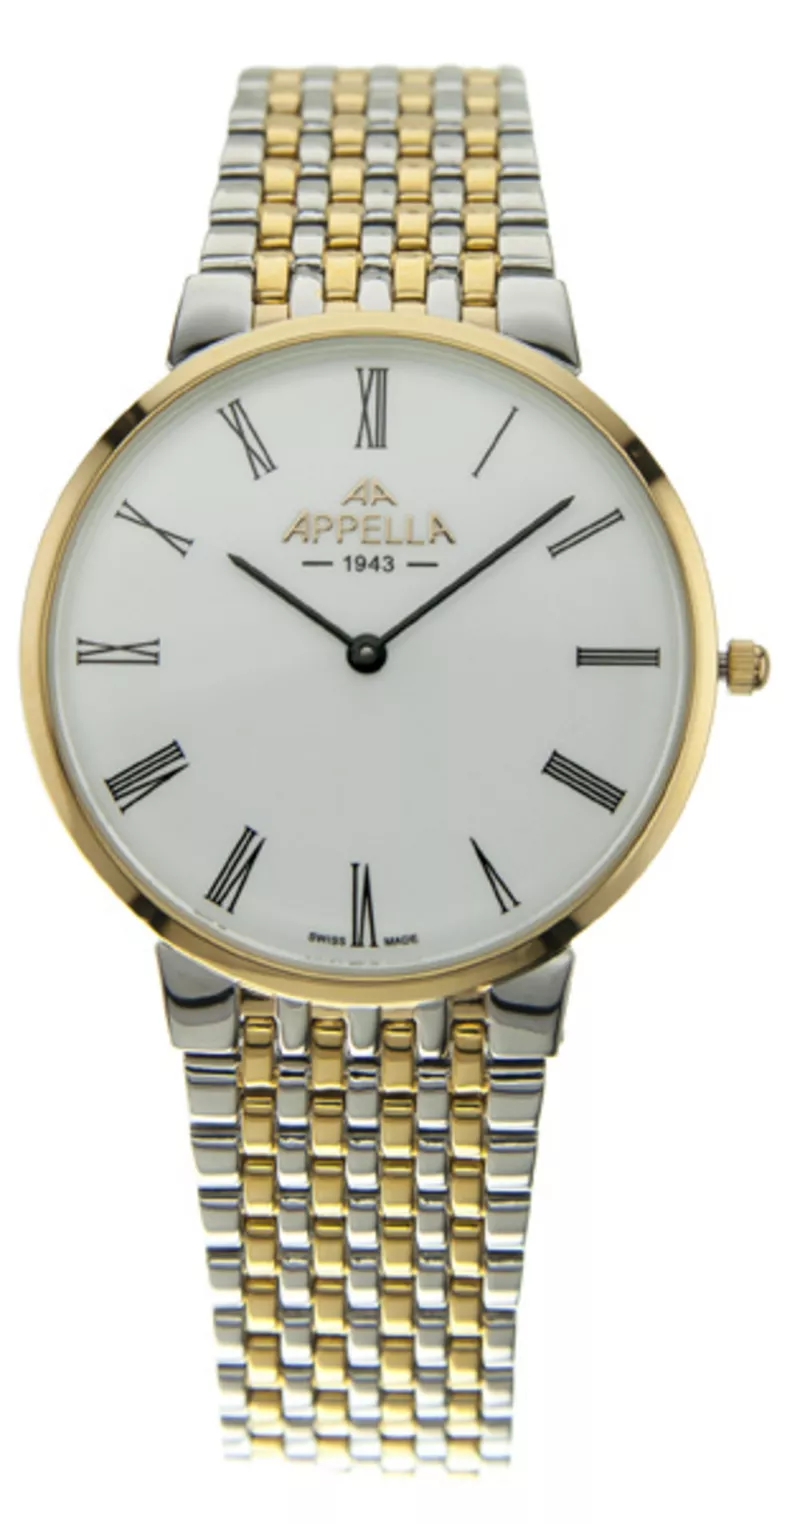 Часы Appella 4123-2001